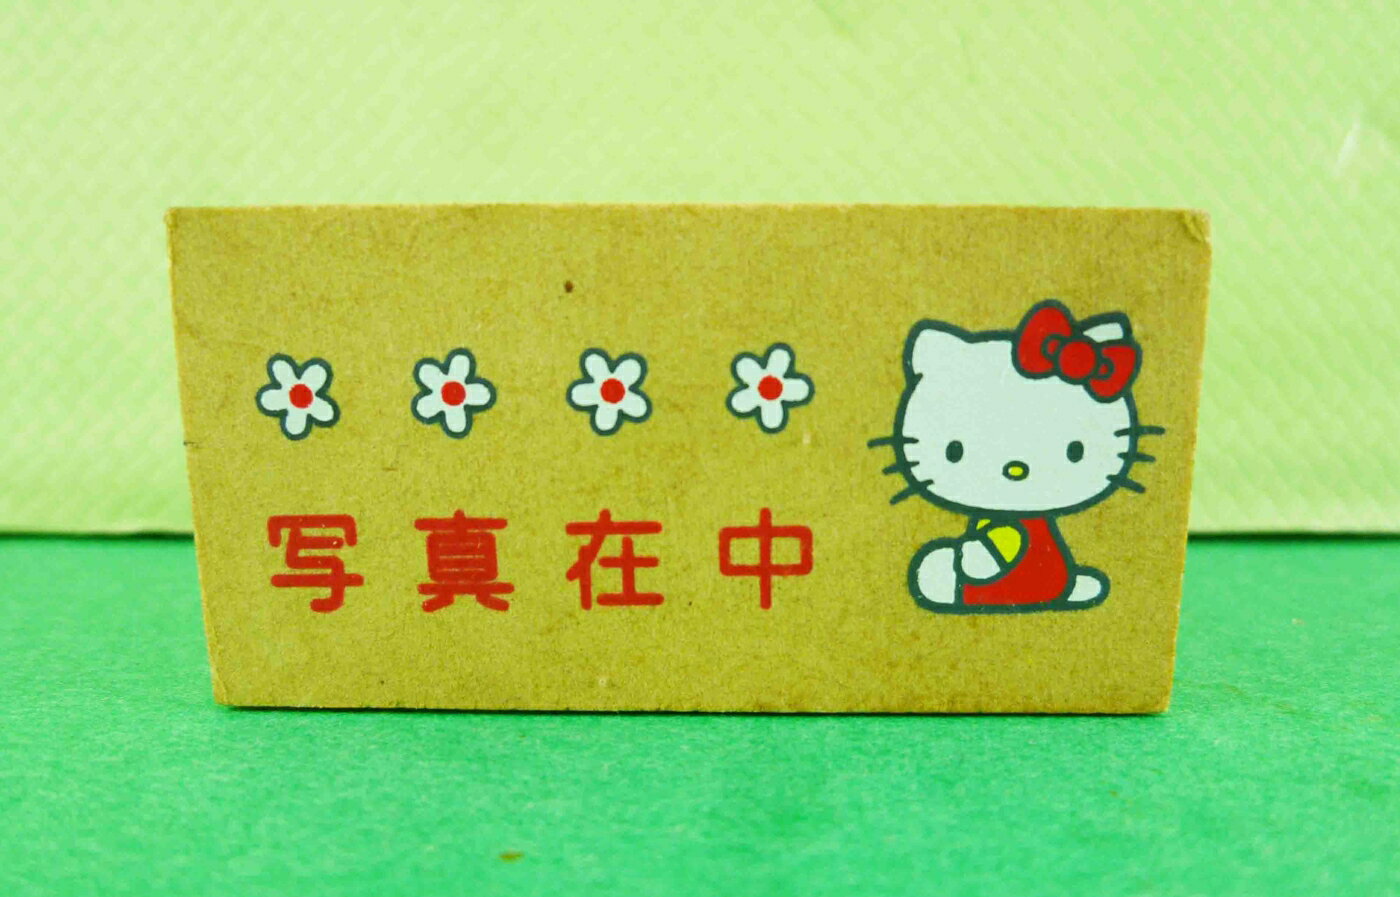 【震撼精品百貨】Hello Kitty 凱蒂貓 KITTY木製印章-寫真在中圖案 震撼日式精品百貨